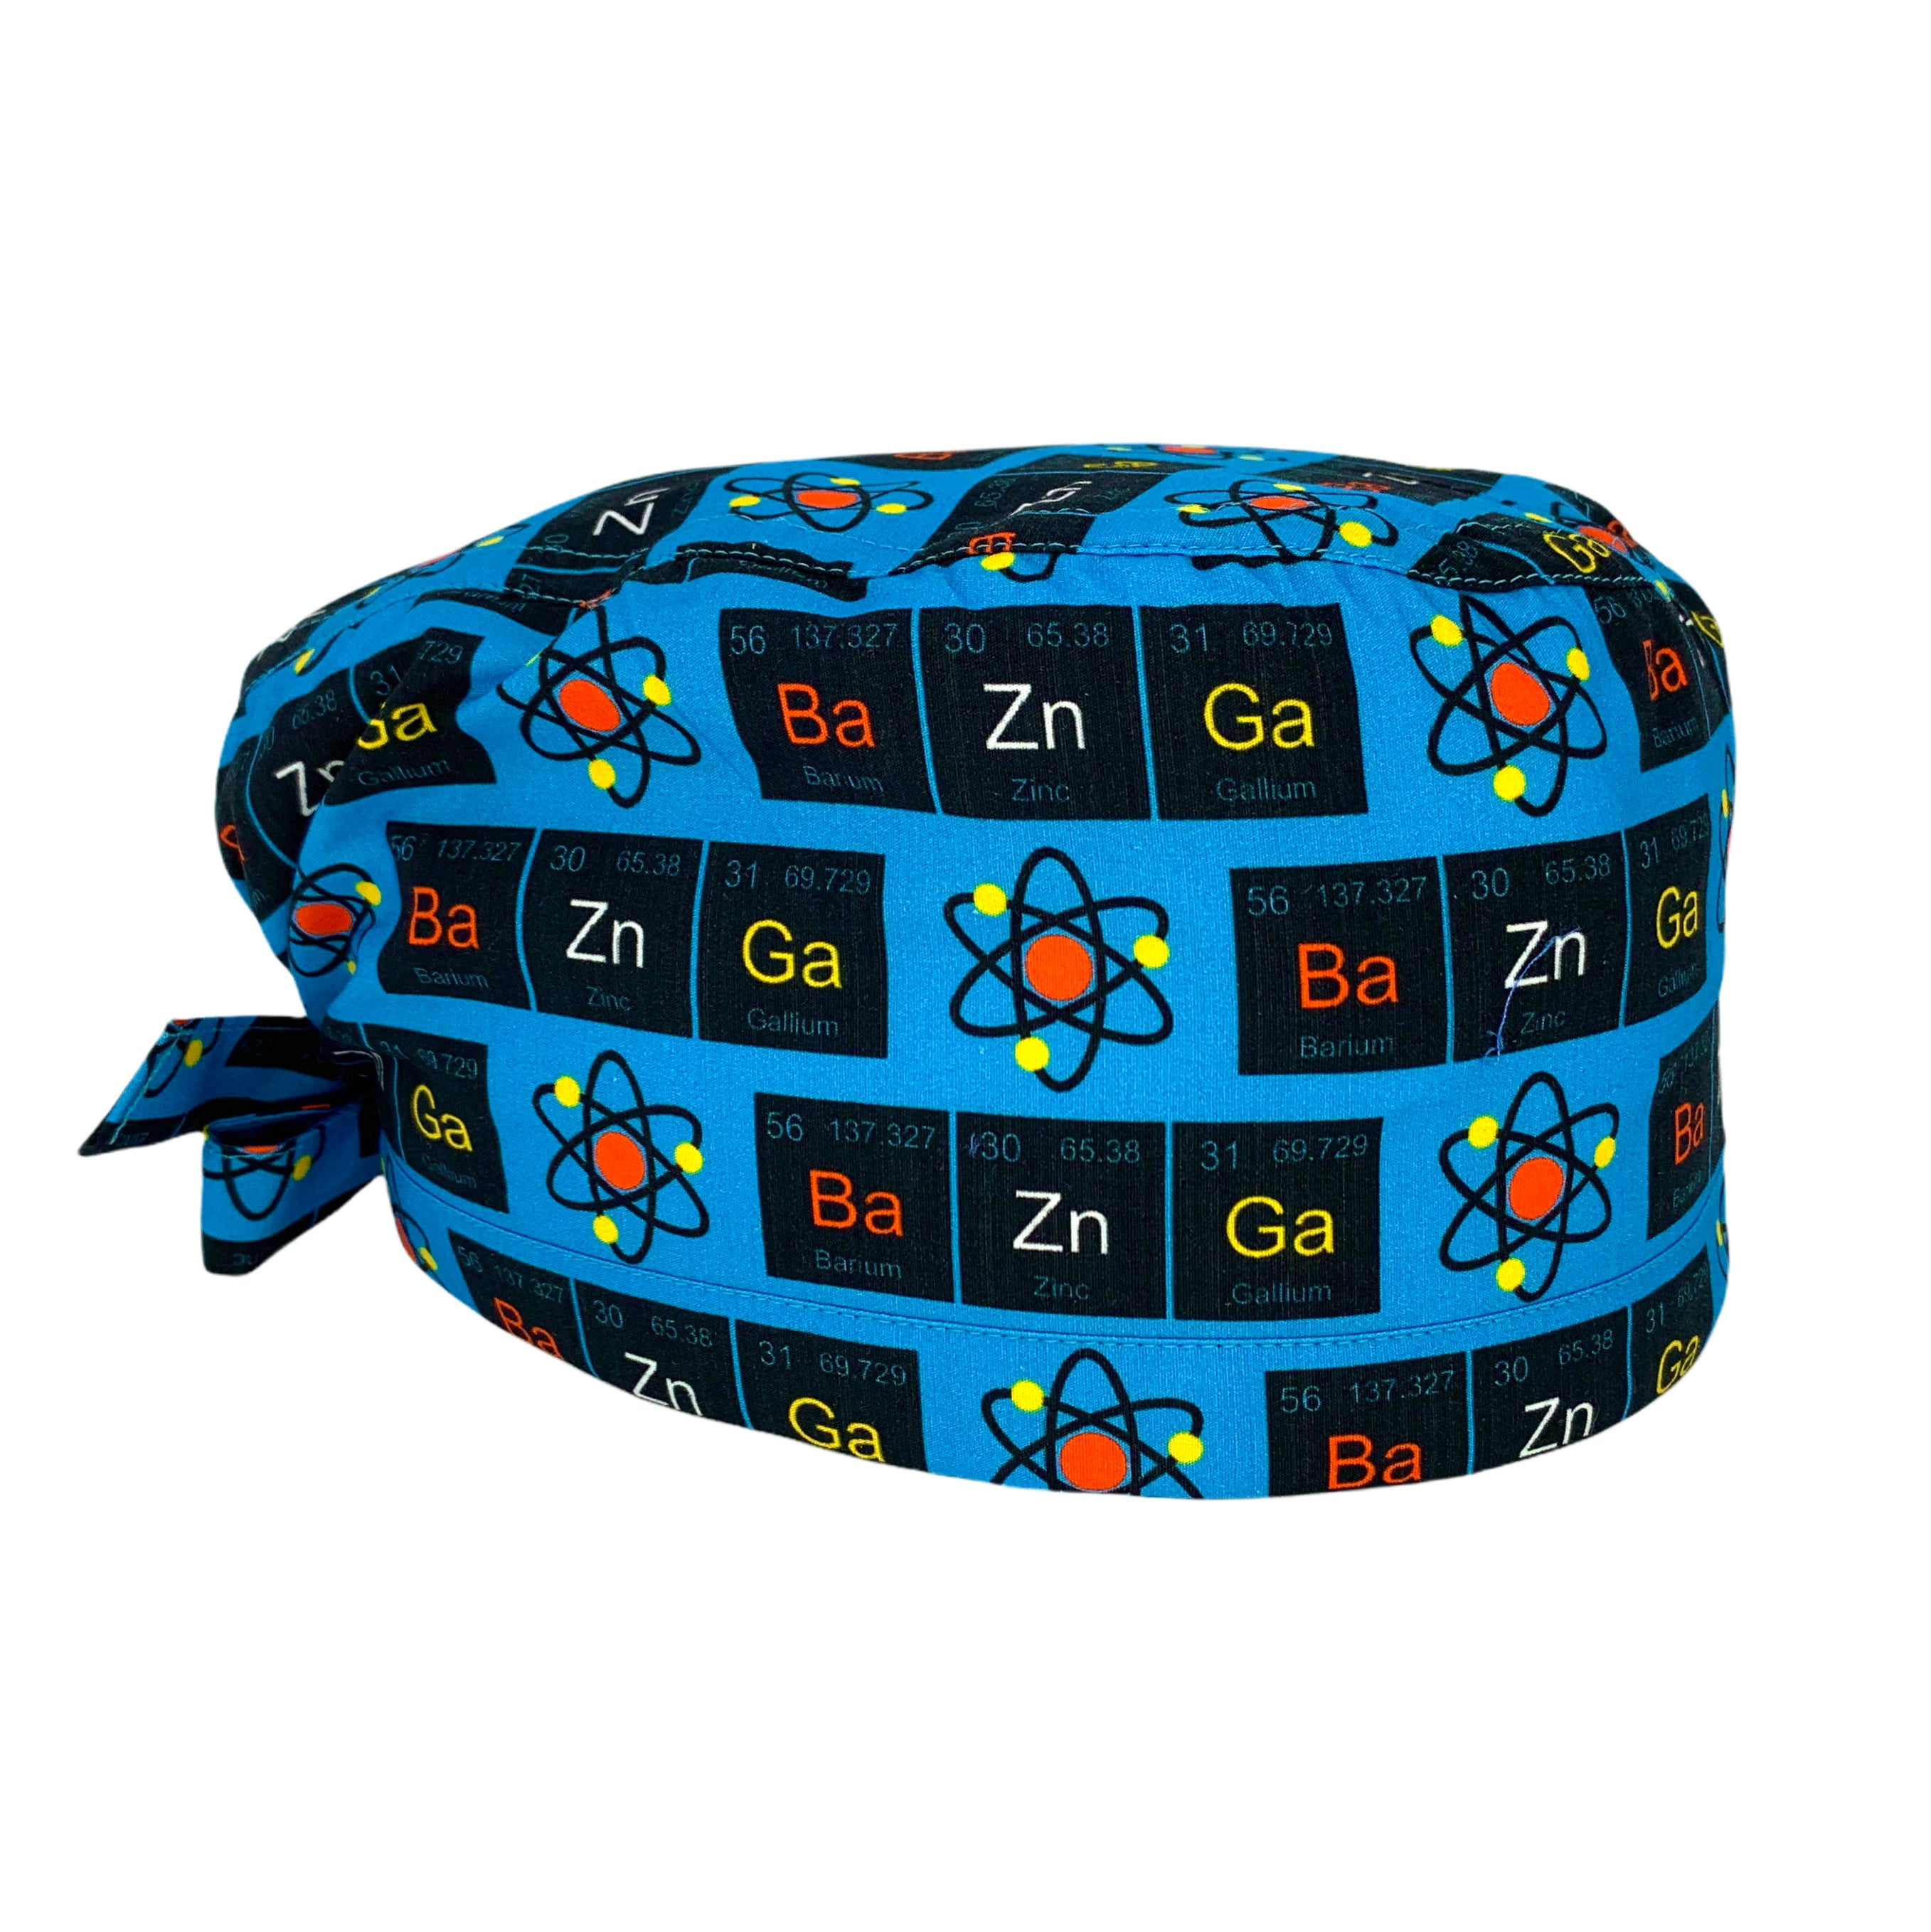 Bario, Zinco e Gallio rappresentati con i loro simboli della tavola periodica, con un'icona che rappresenta l'atomo, su sfondo azzurro intenso